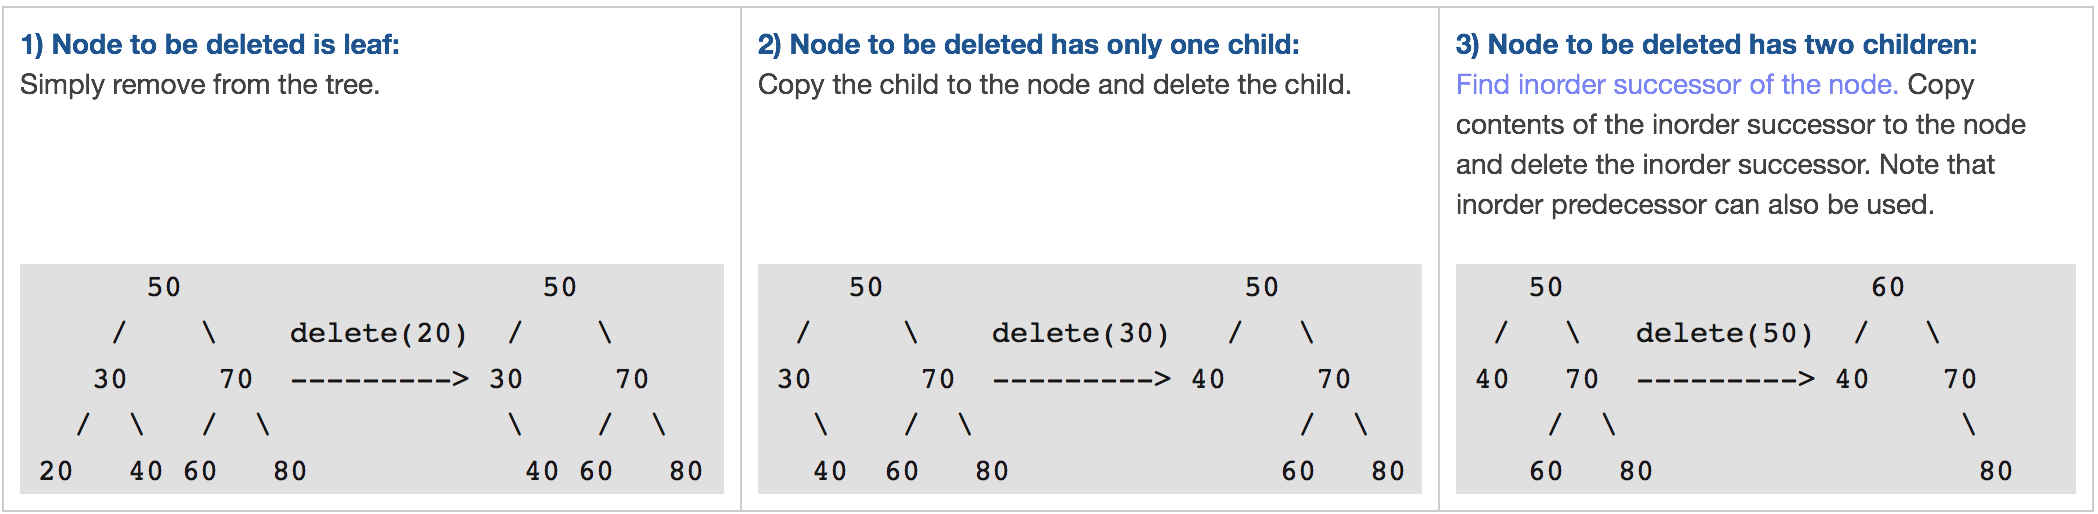 delete_node_in_bst